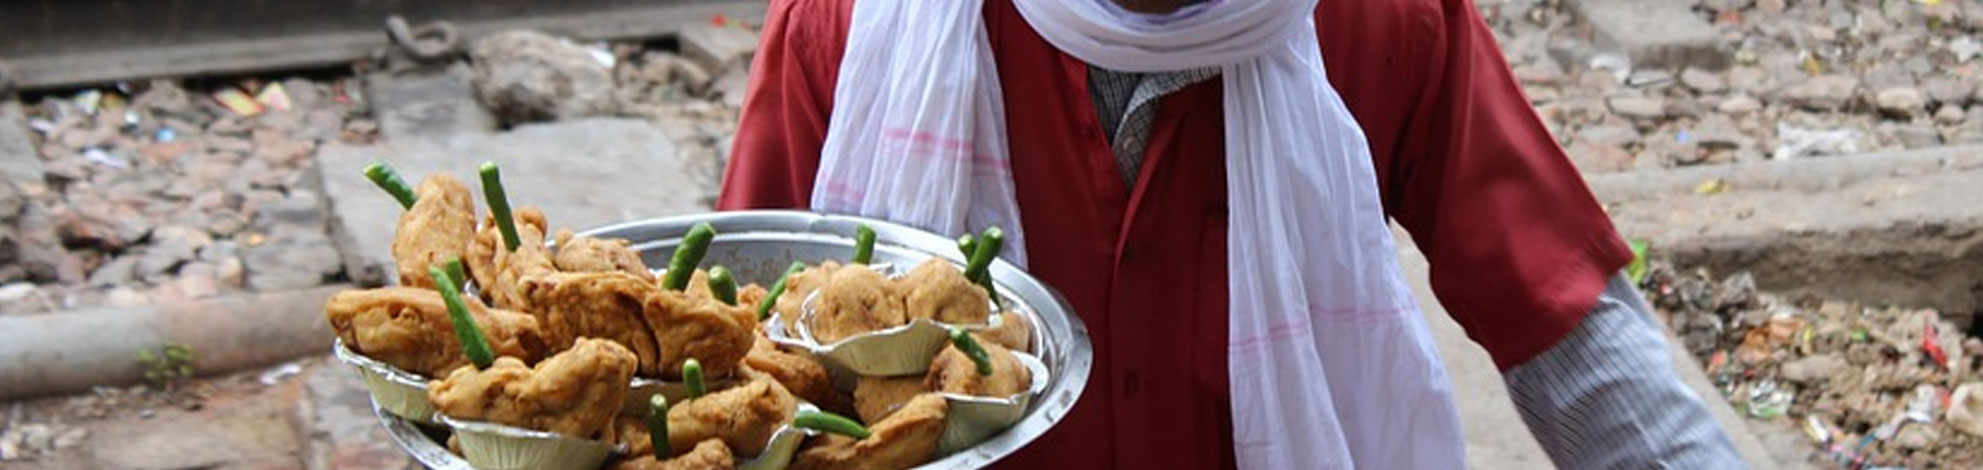 Indian-railway-food